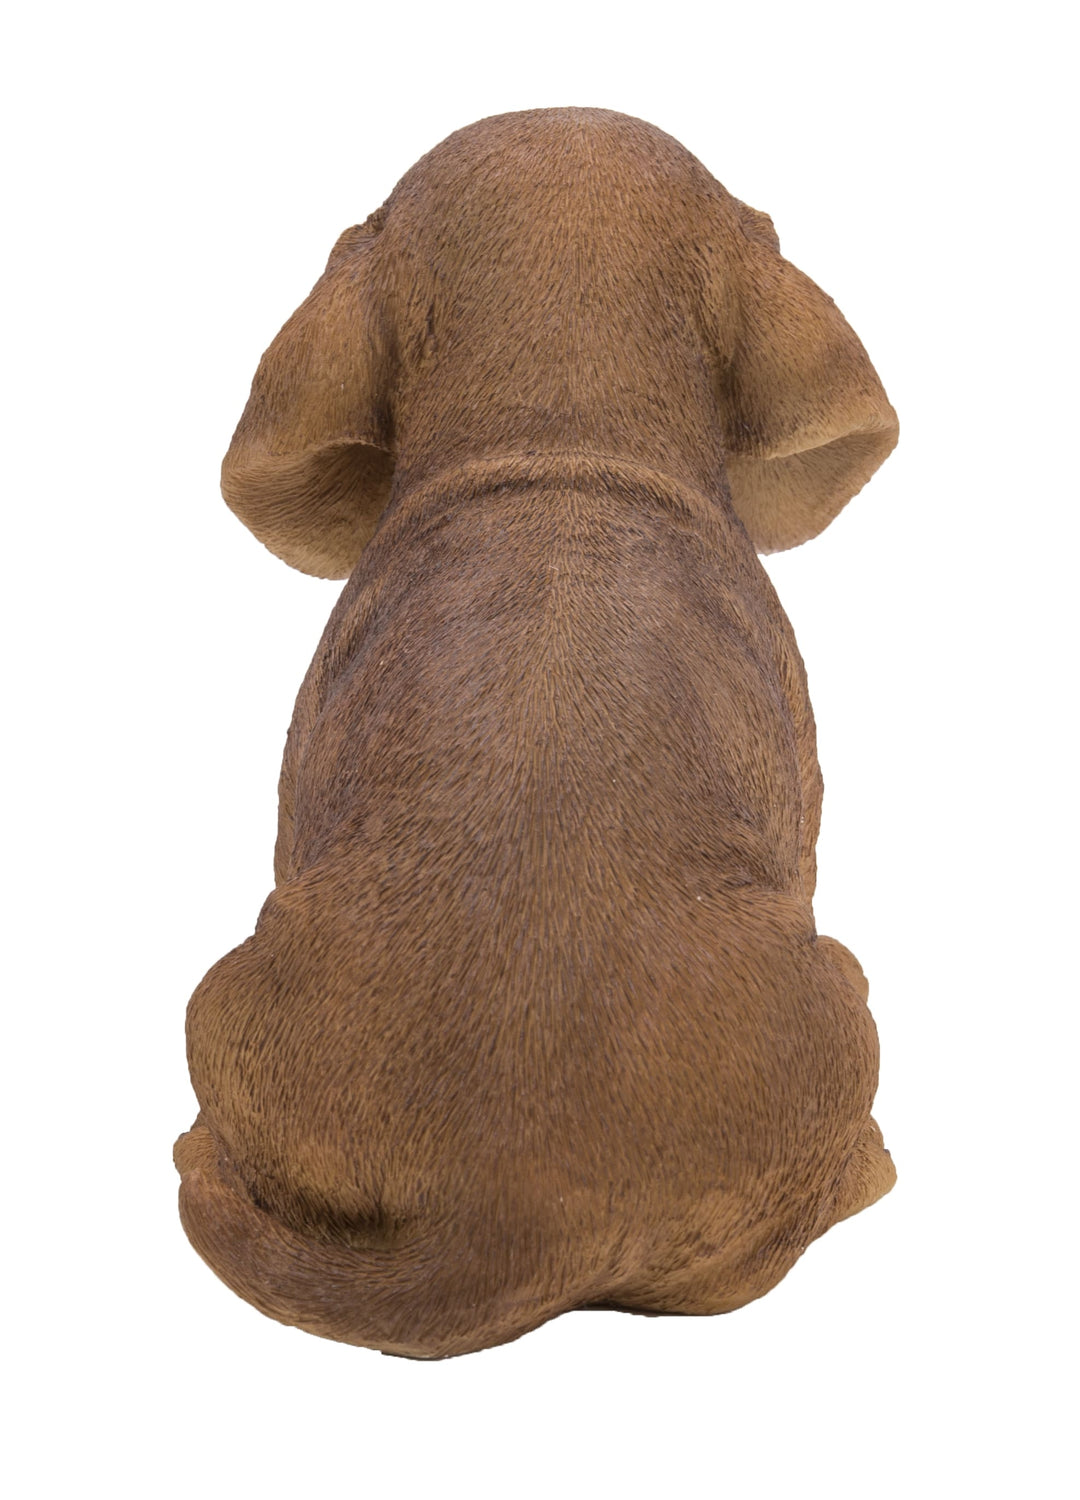 Pet Pals - Dachshund Sitting Puppy Statue - Brown HI-LINE GIFT LTD.